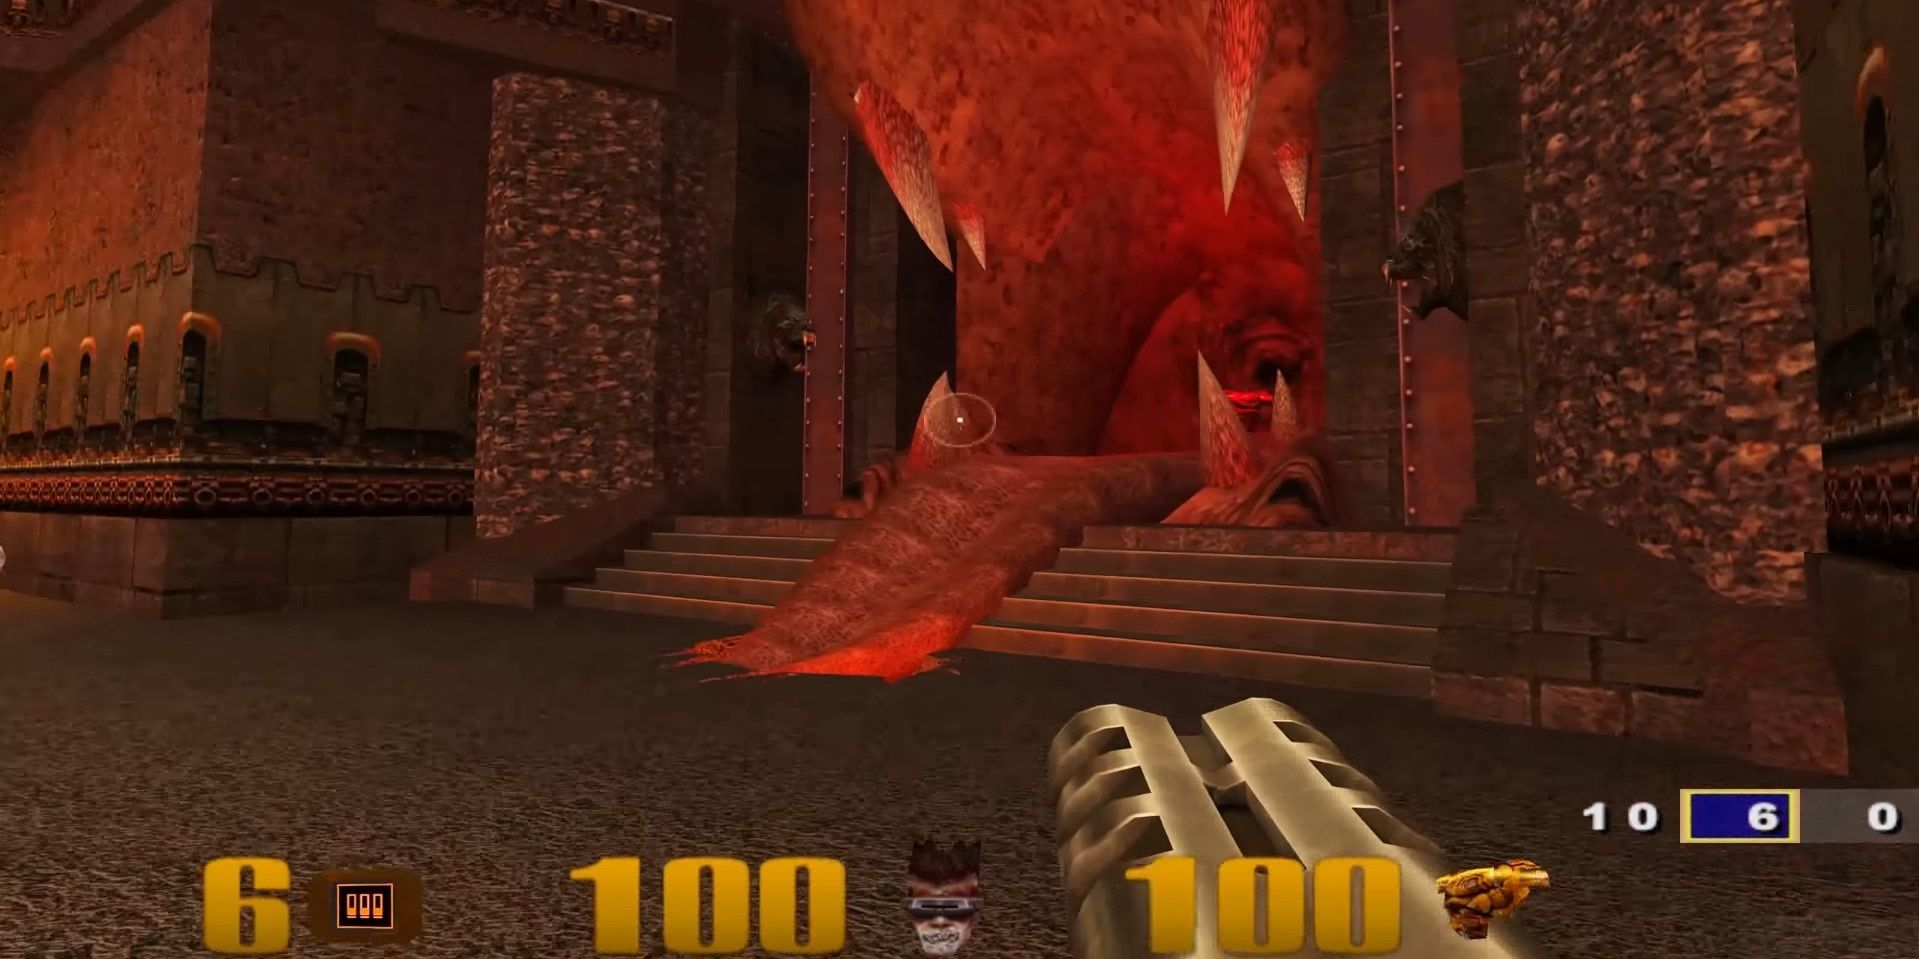 A player wields the Super Shotgun in Quake 3 Arena